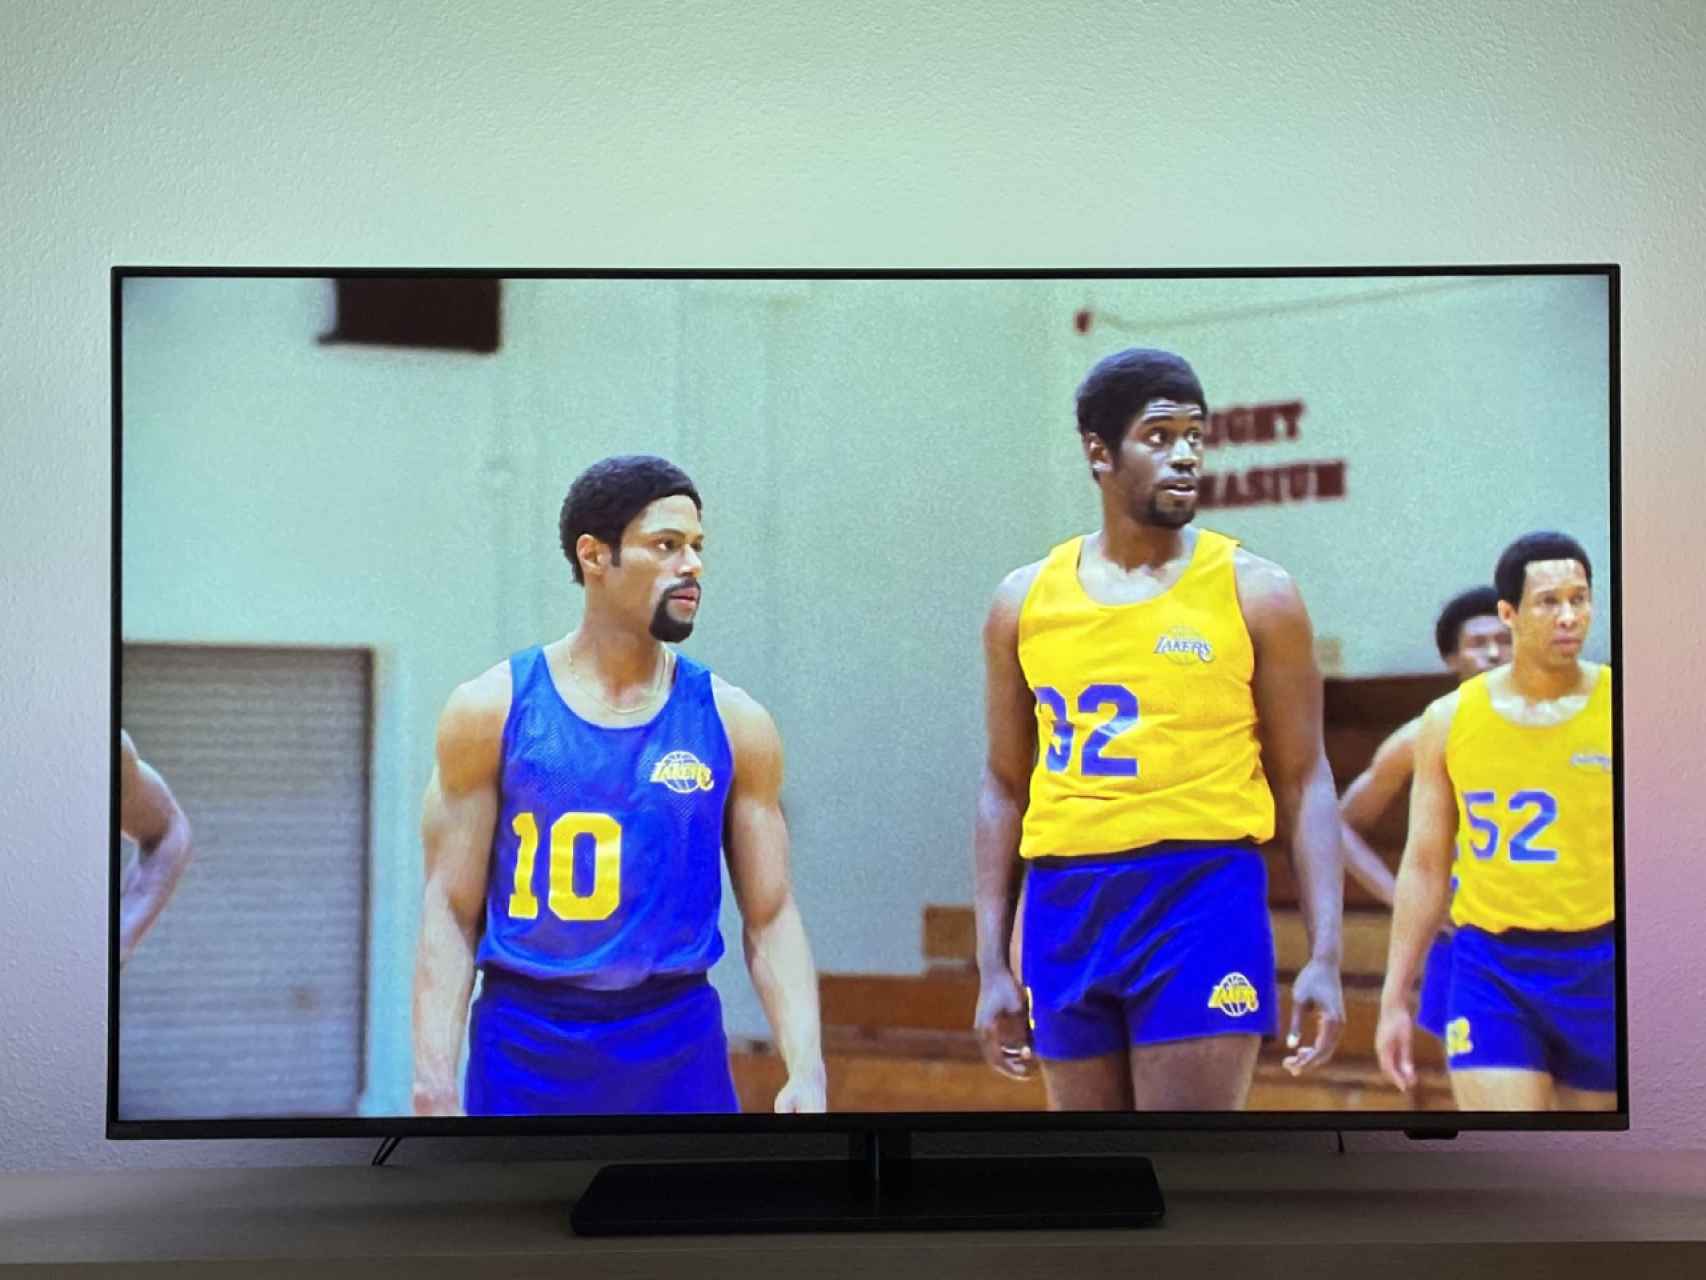 Esta Smart TV de Phillips tiene 4K y sistema Ambilight para que juegues y  veas películas a lo grande y sólo cuesta 370 euros